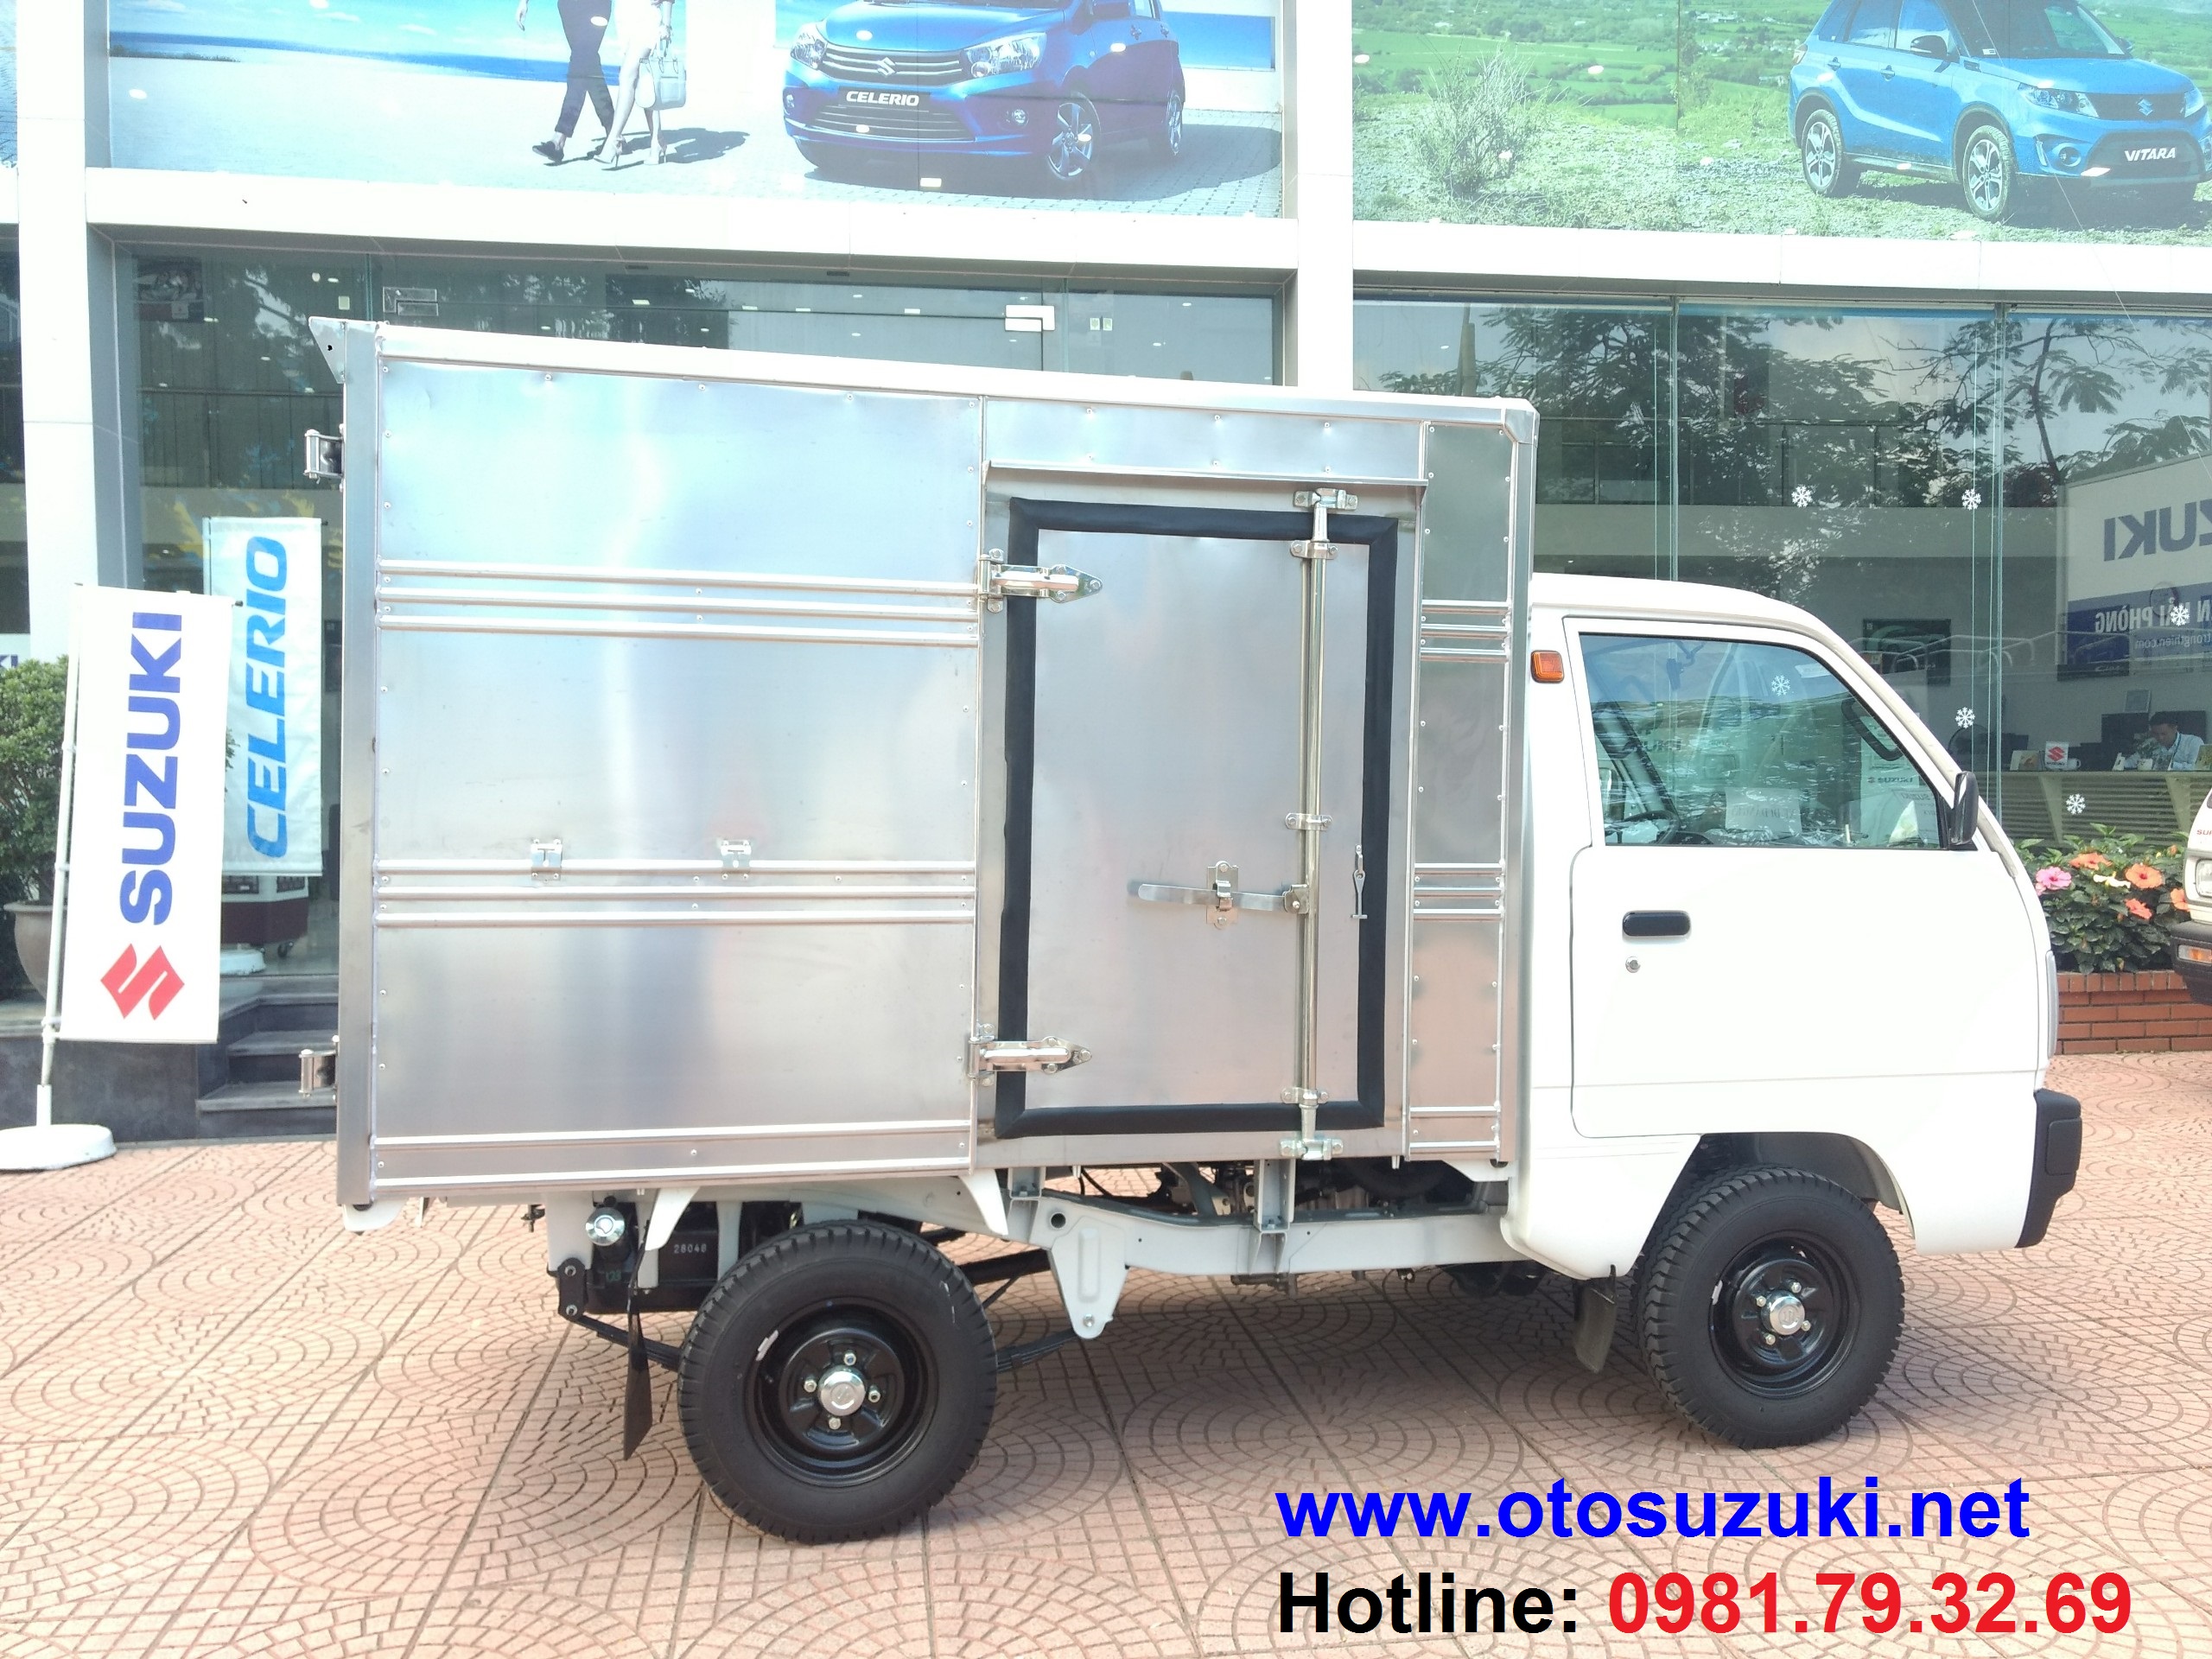 Xe tải dưới 5 tạ Suzuki Truck 490kg